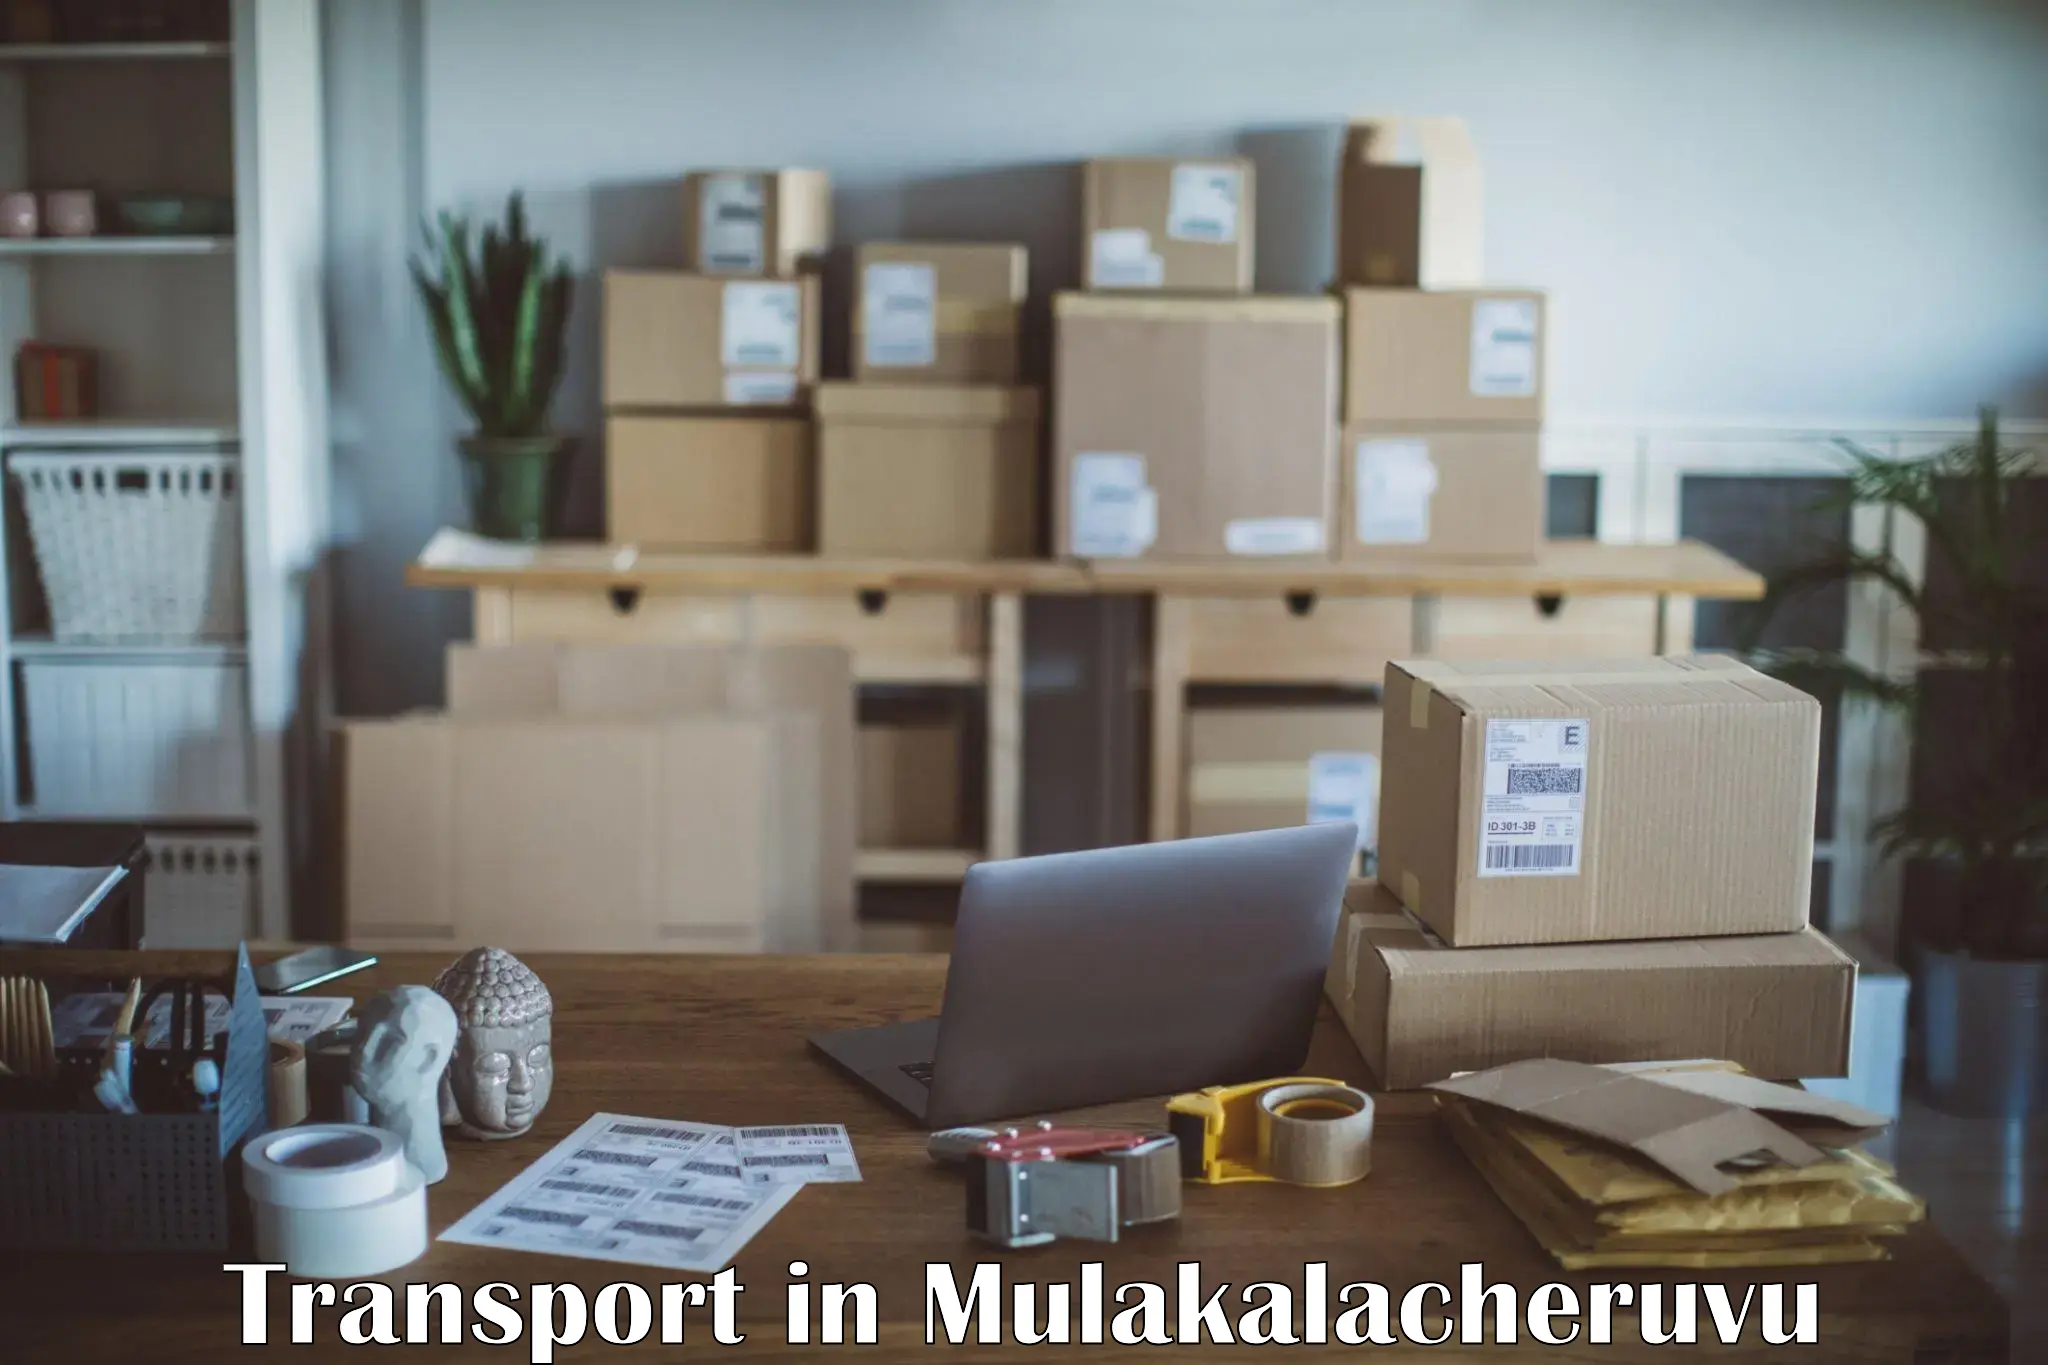 Online transport booking in Mulakalacheruvu